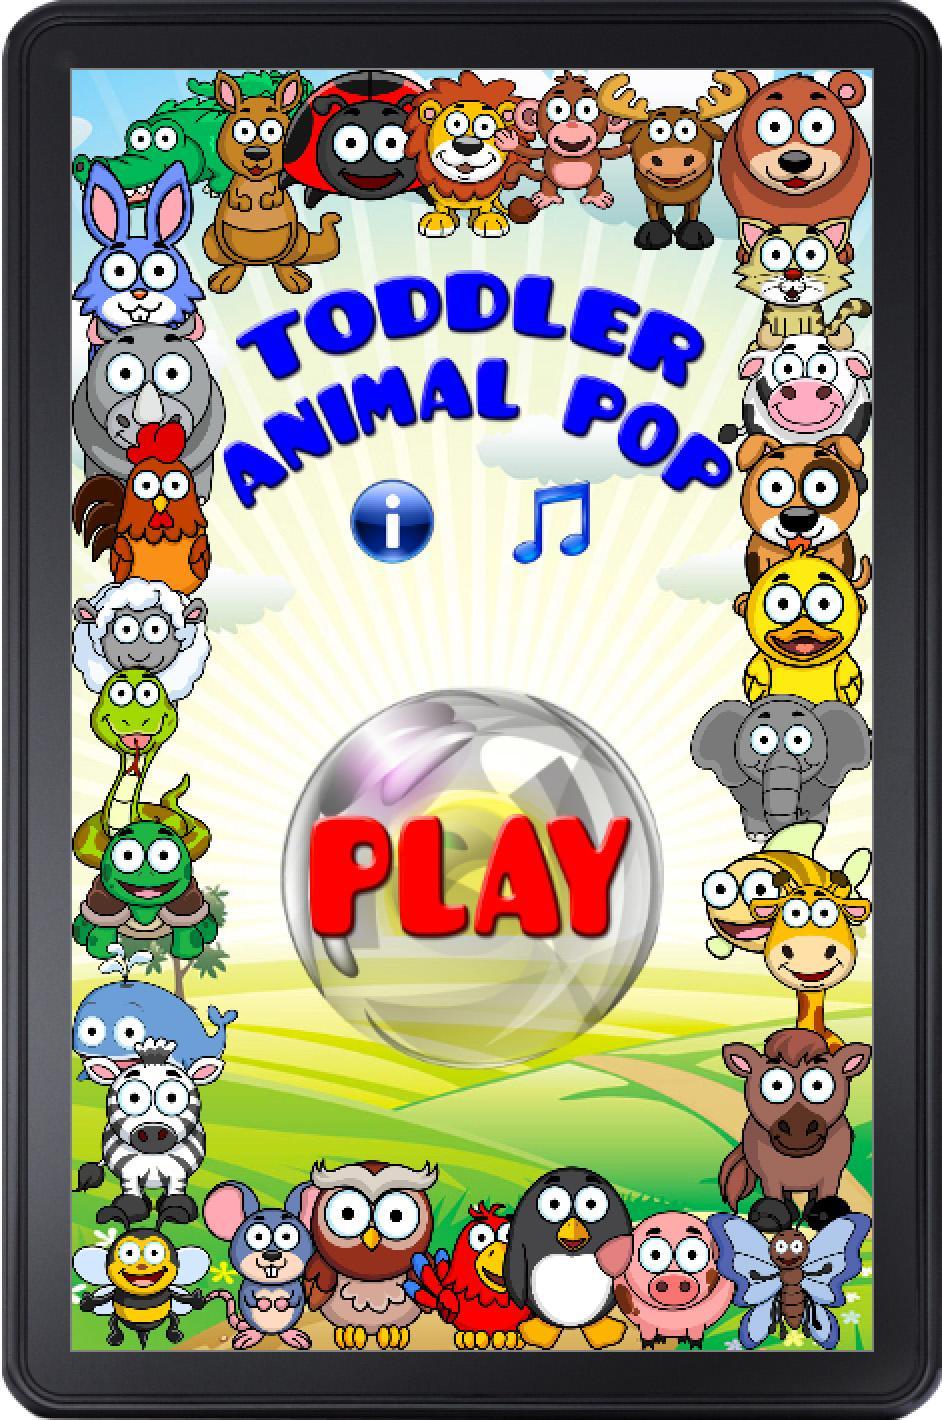 Toddler Animal Pop 4.9 Screenshot 13